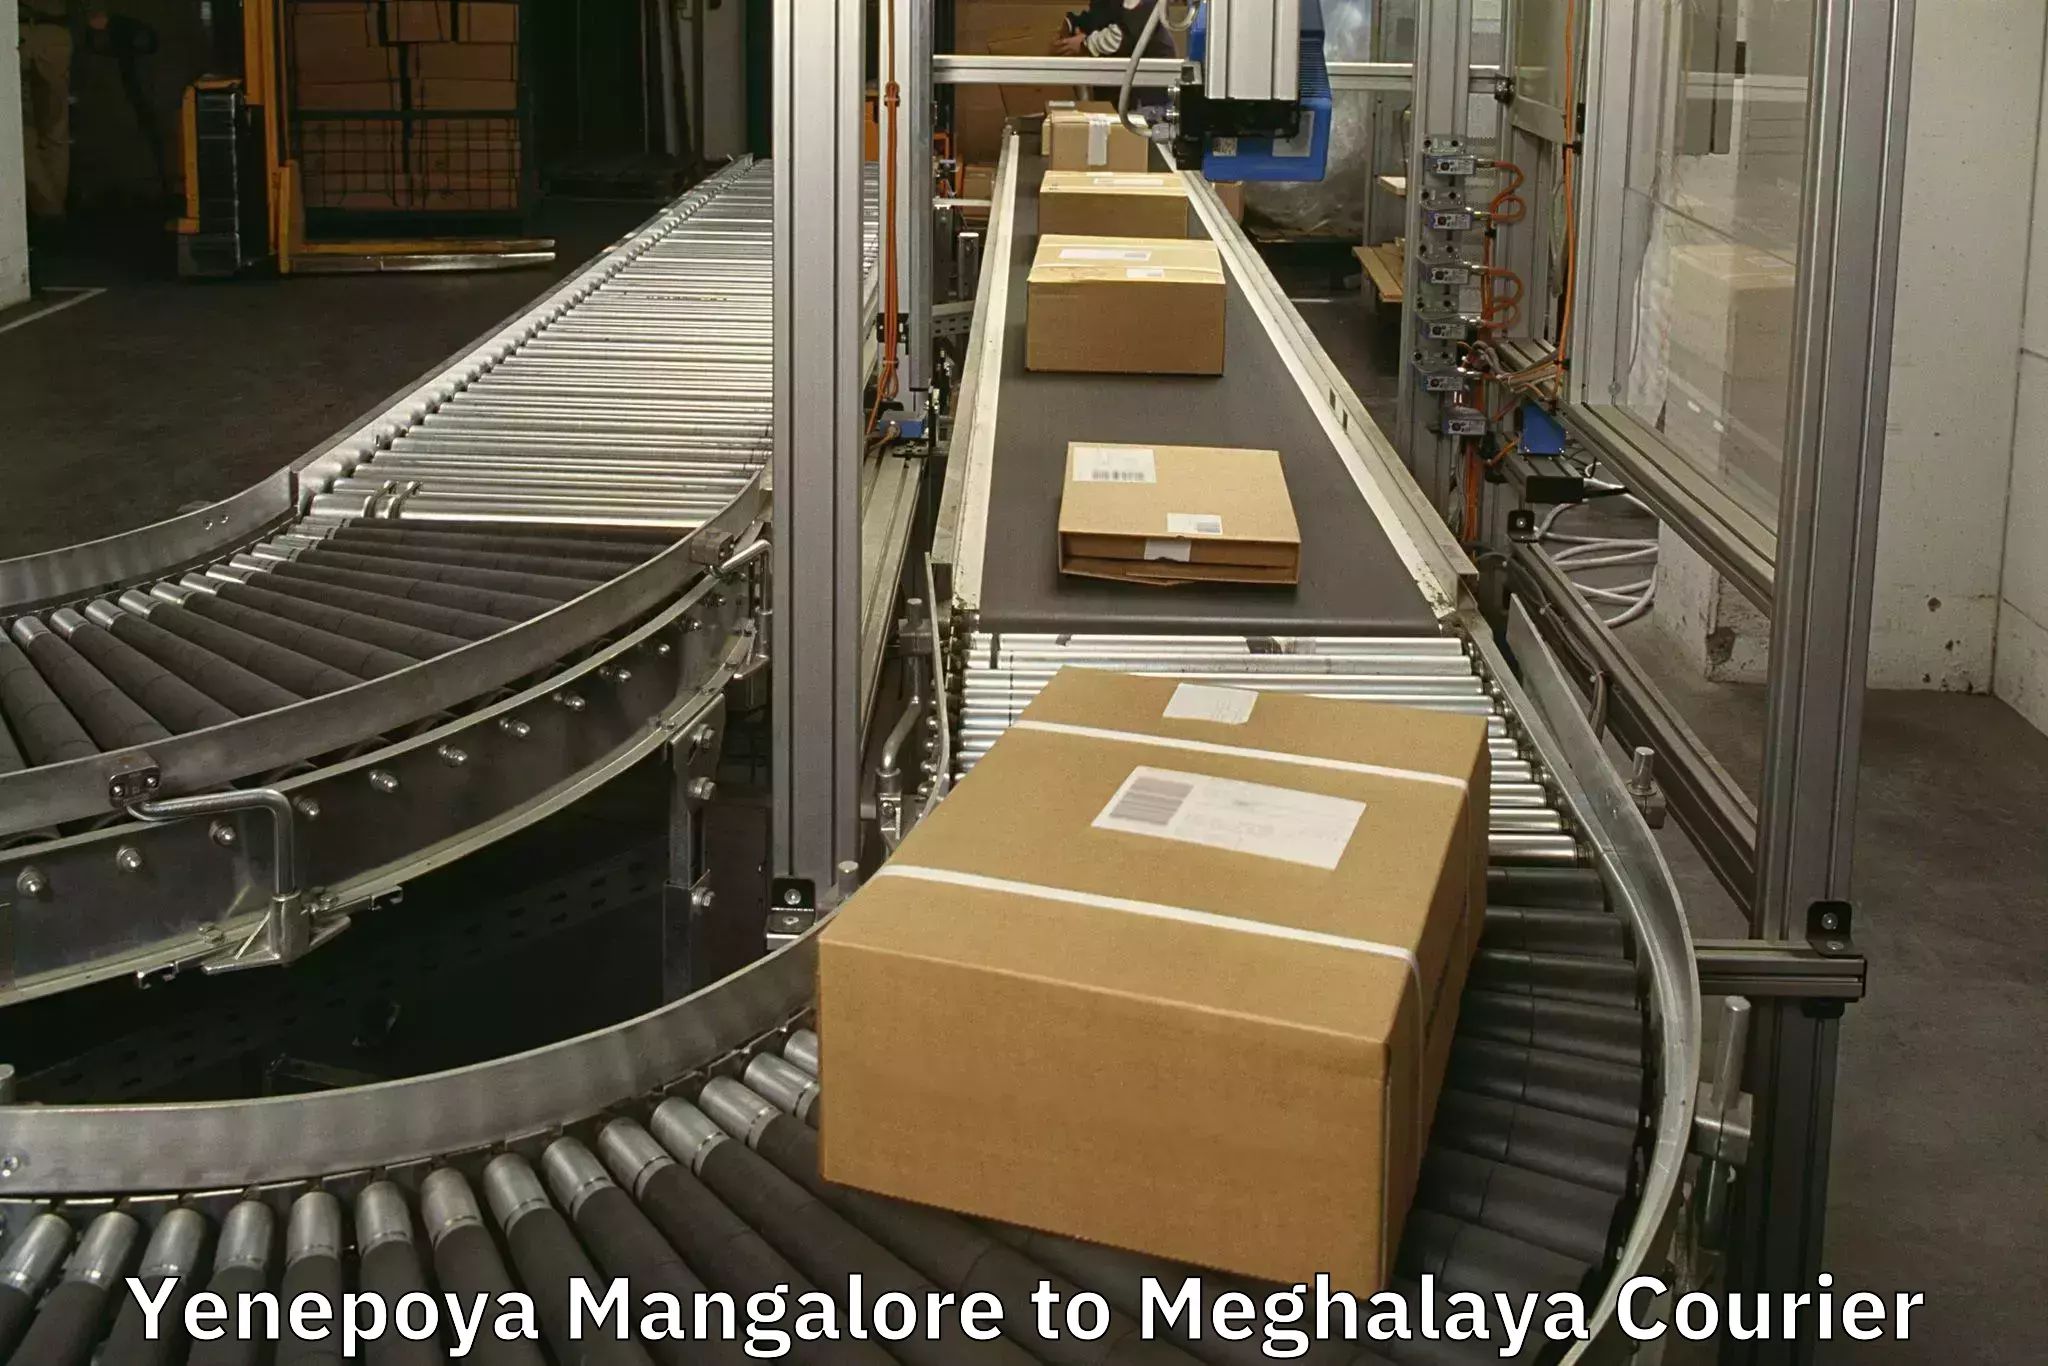 Baggage transport scheduler Yenepoya Mangalore to Shillong